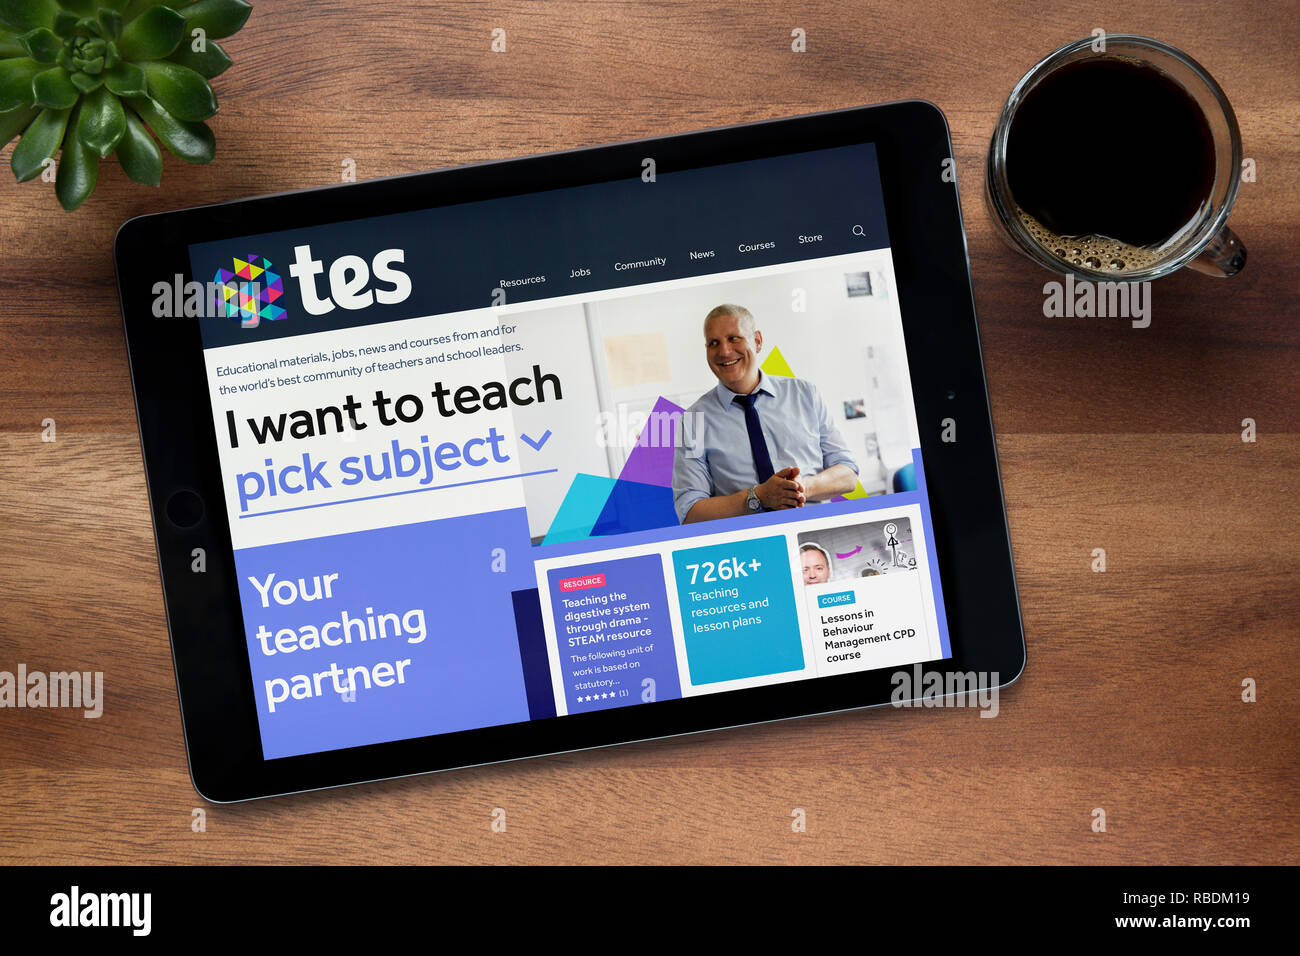 El sitio web de Tes (antiguamente The Times Educational Supplement) es visto en un iPad, descansando sobre una tabla de madera (uso Editorial solamente). Foto de stock